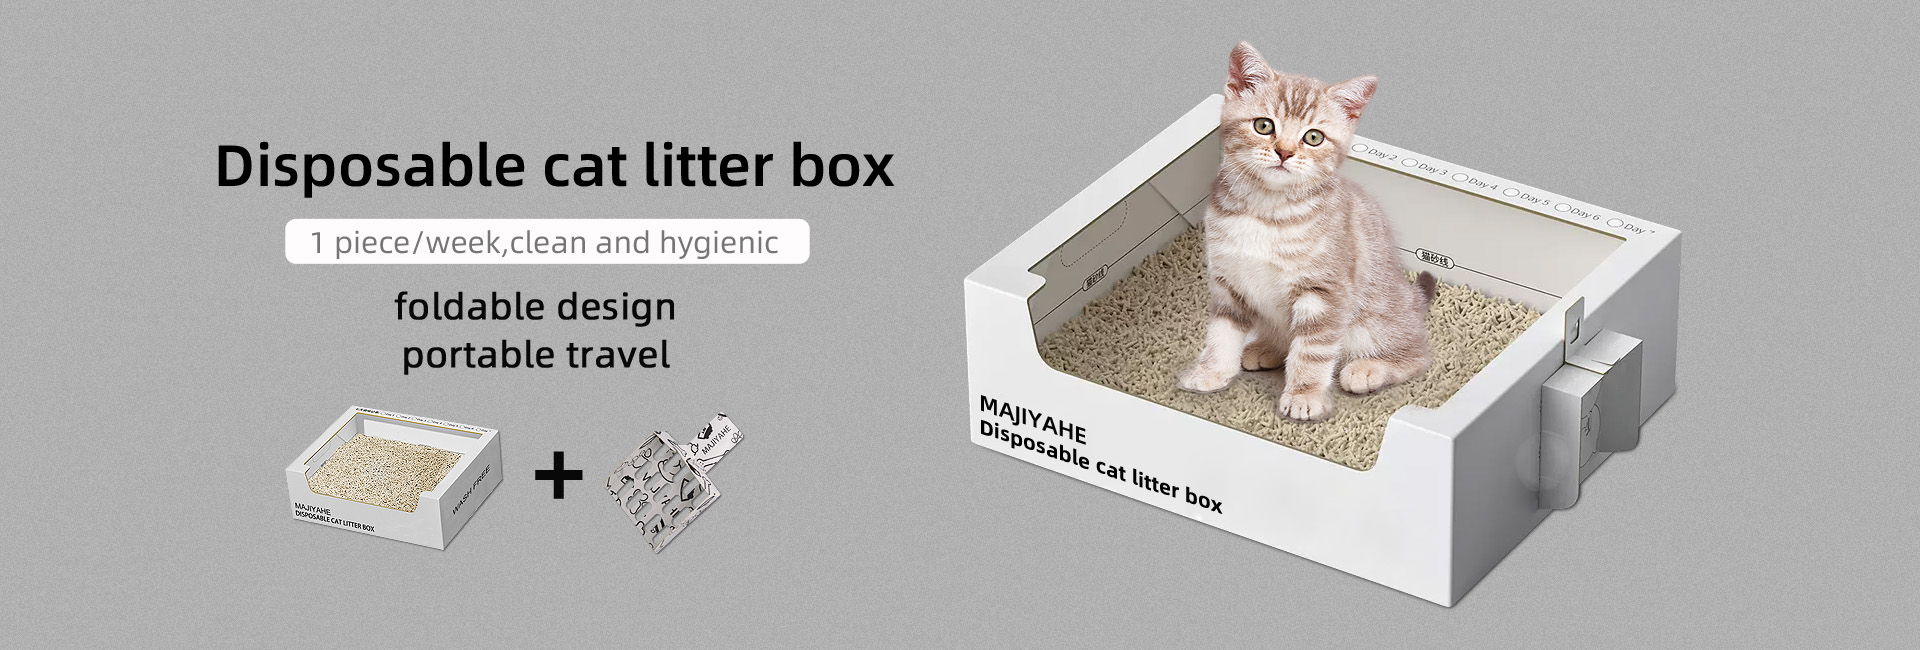 disposable cat litter box